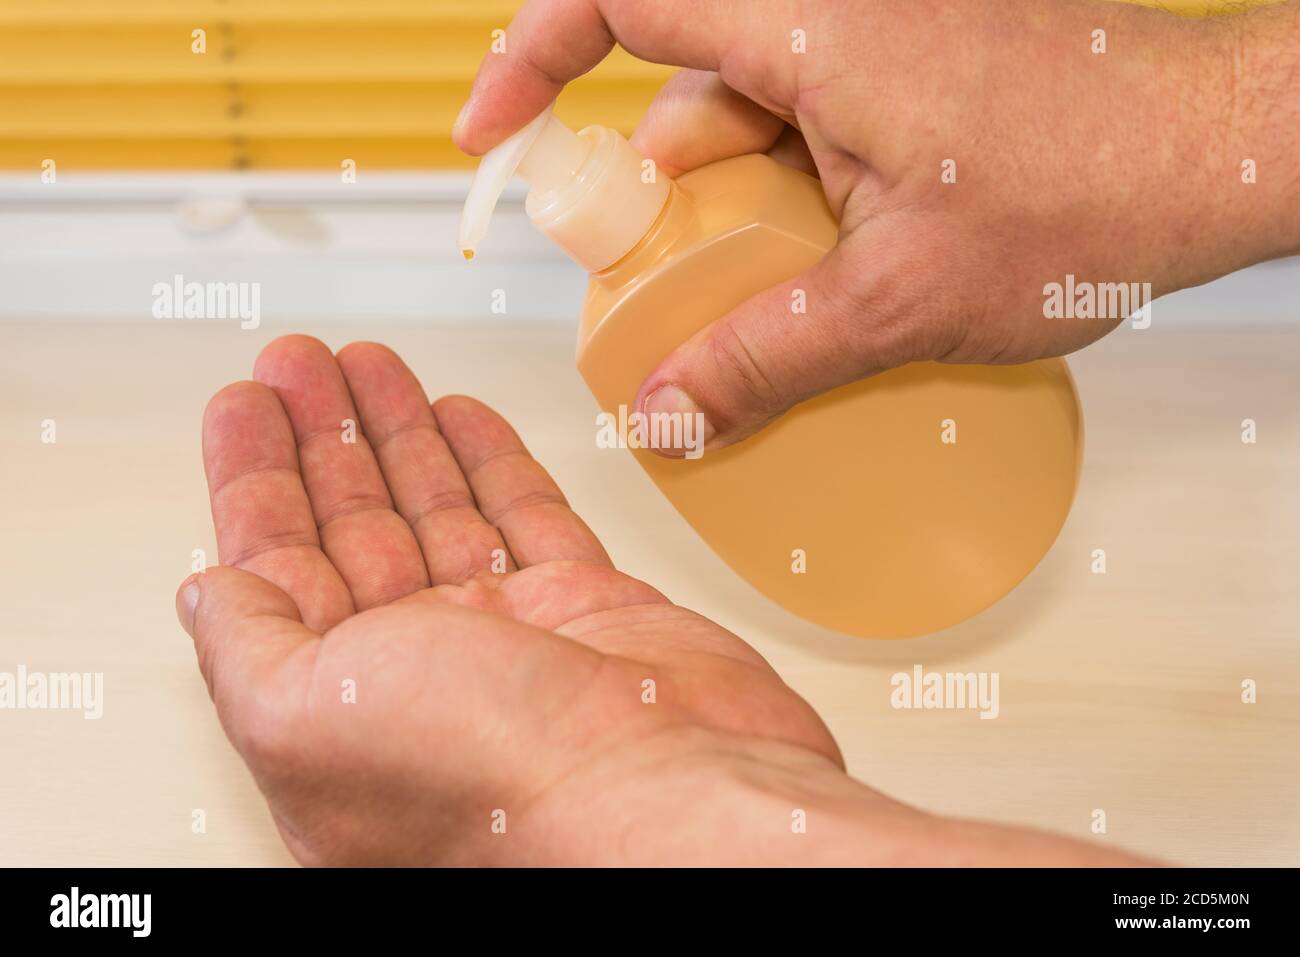 Personnes utilisant l'alcool gel antiseptique, prévenir l'infection, foyer de Covid-19, les hommes se lavant la main avec l'assainisseur pour les mains pour éviter la contamination avec Coronavir Banque D'Images